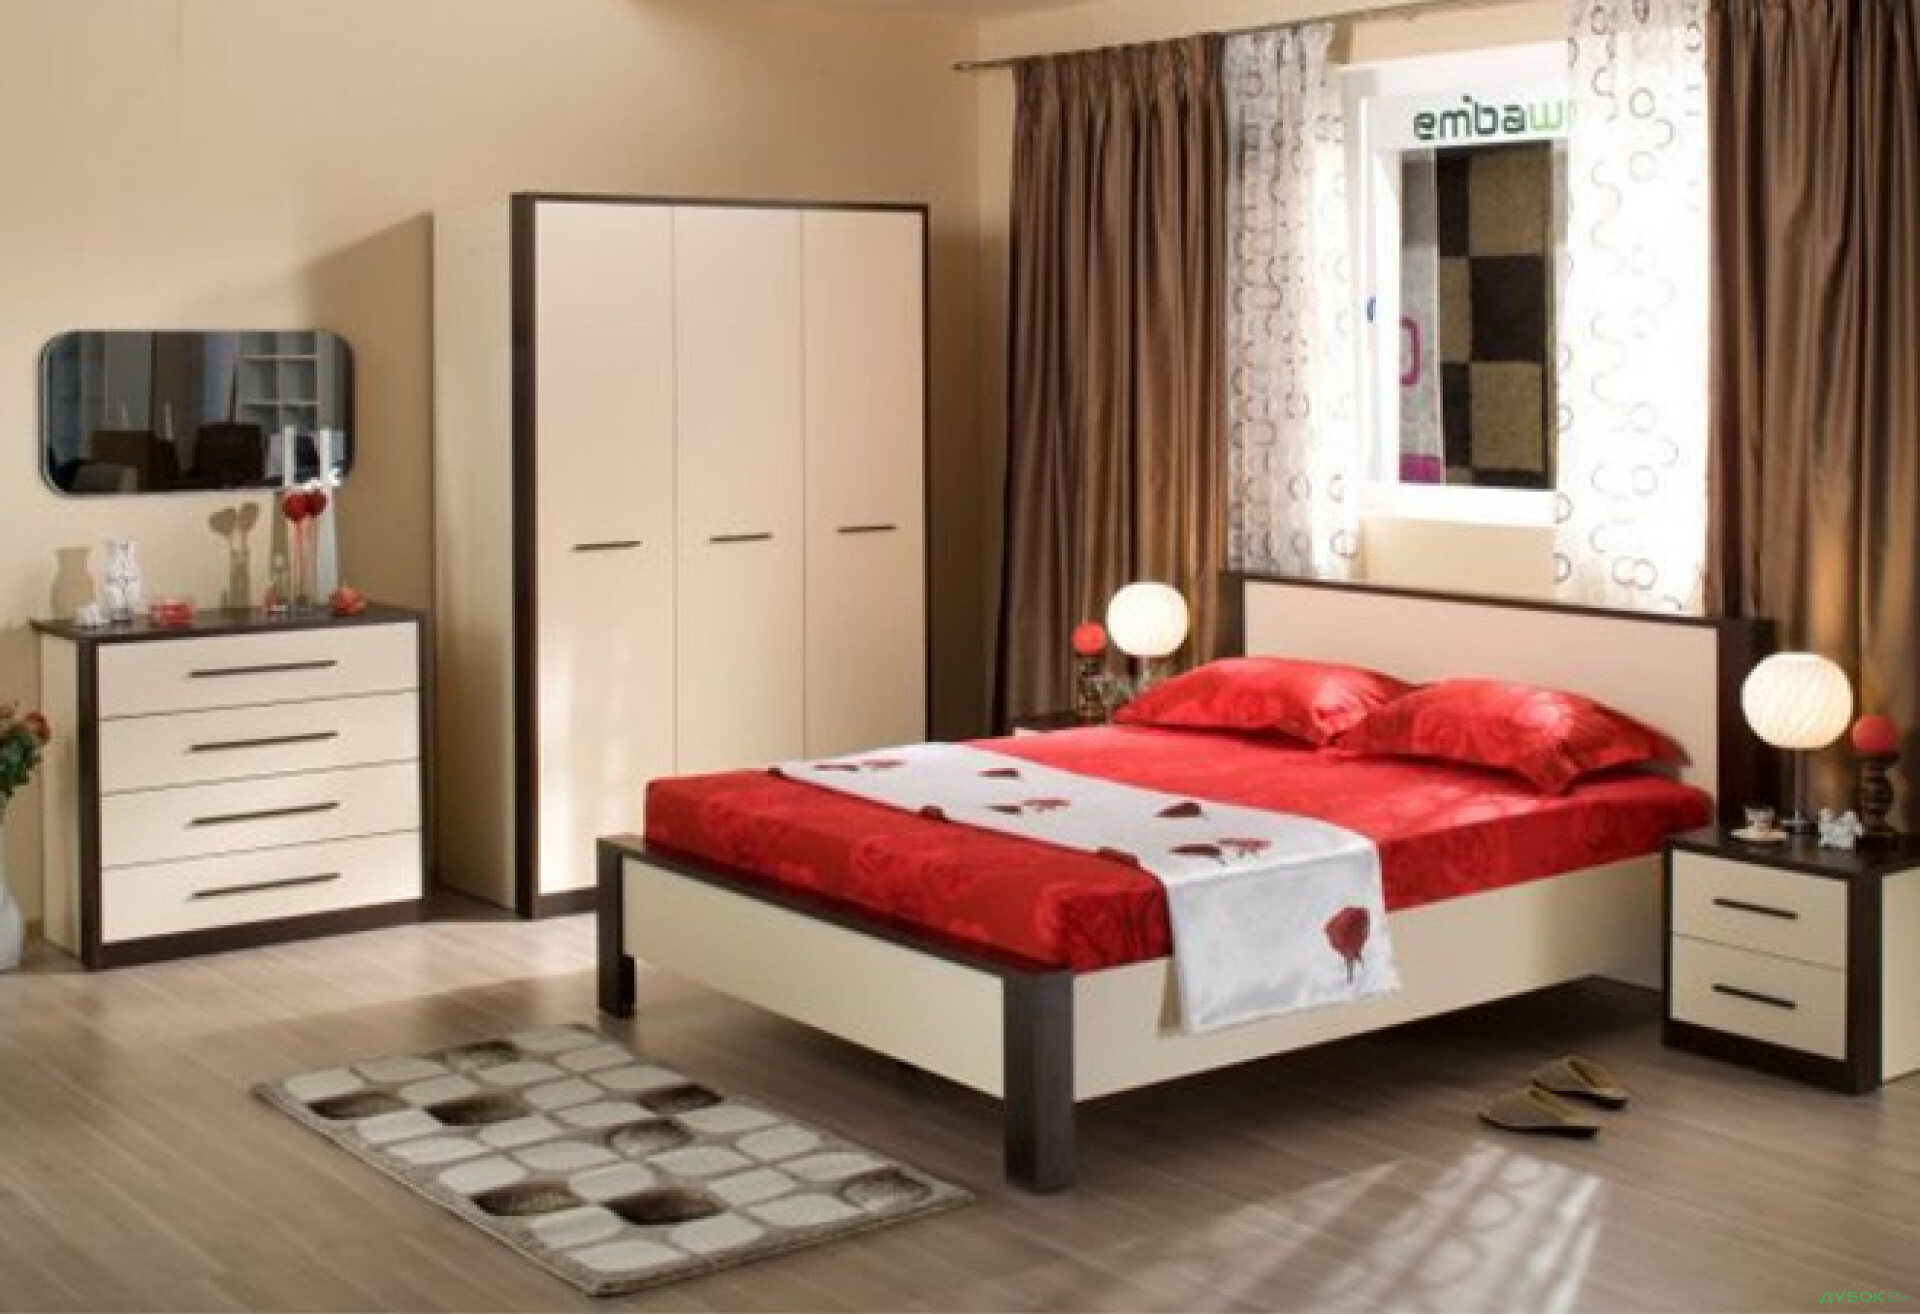 Фото 1 - Кровать 160 + ламели Рига Embawood